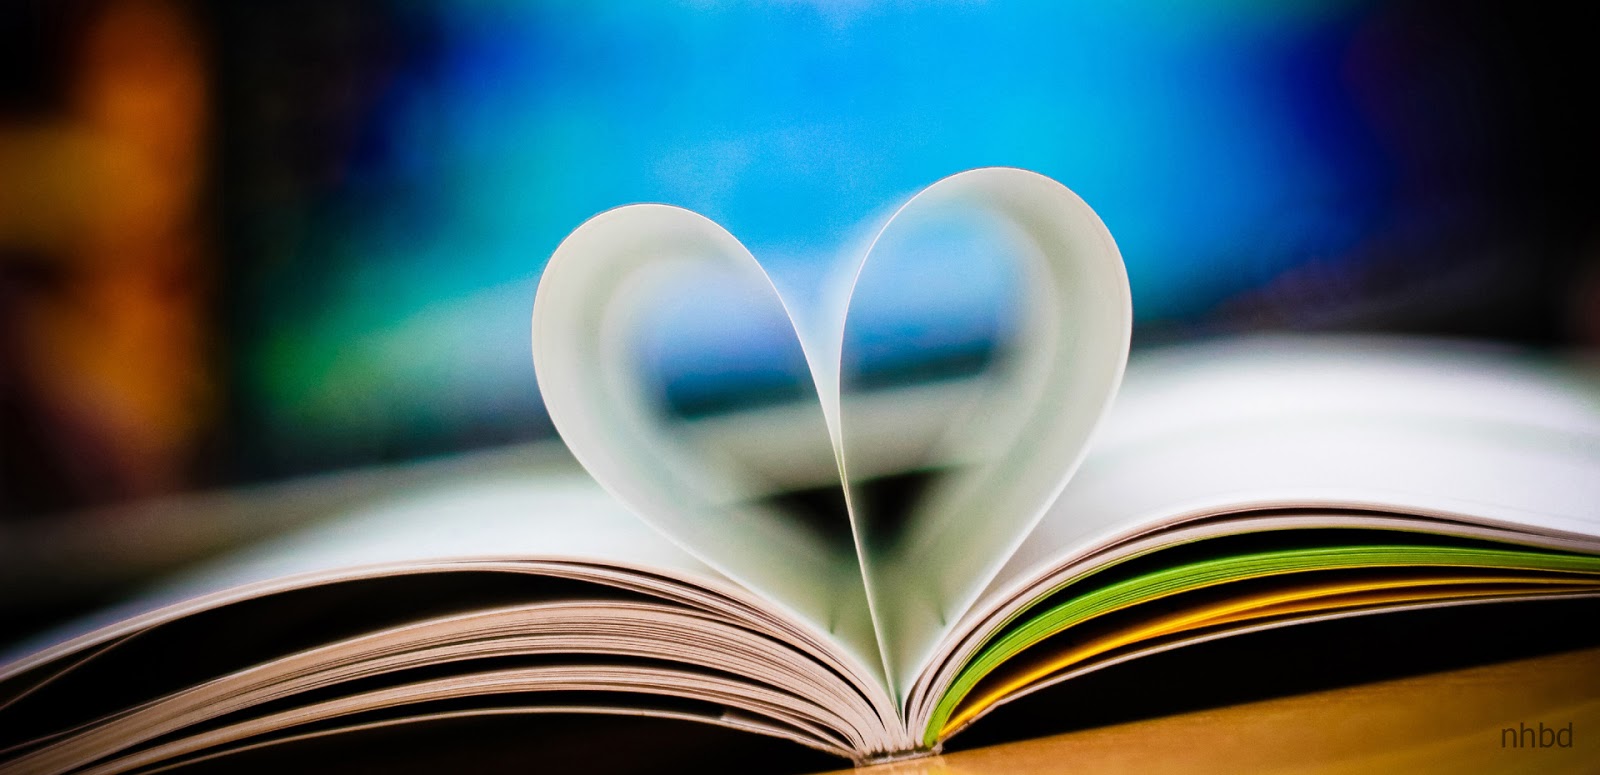 nuovo sfondo d'amore,amore,cuore,libro,lettura,stock photography